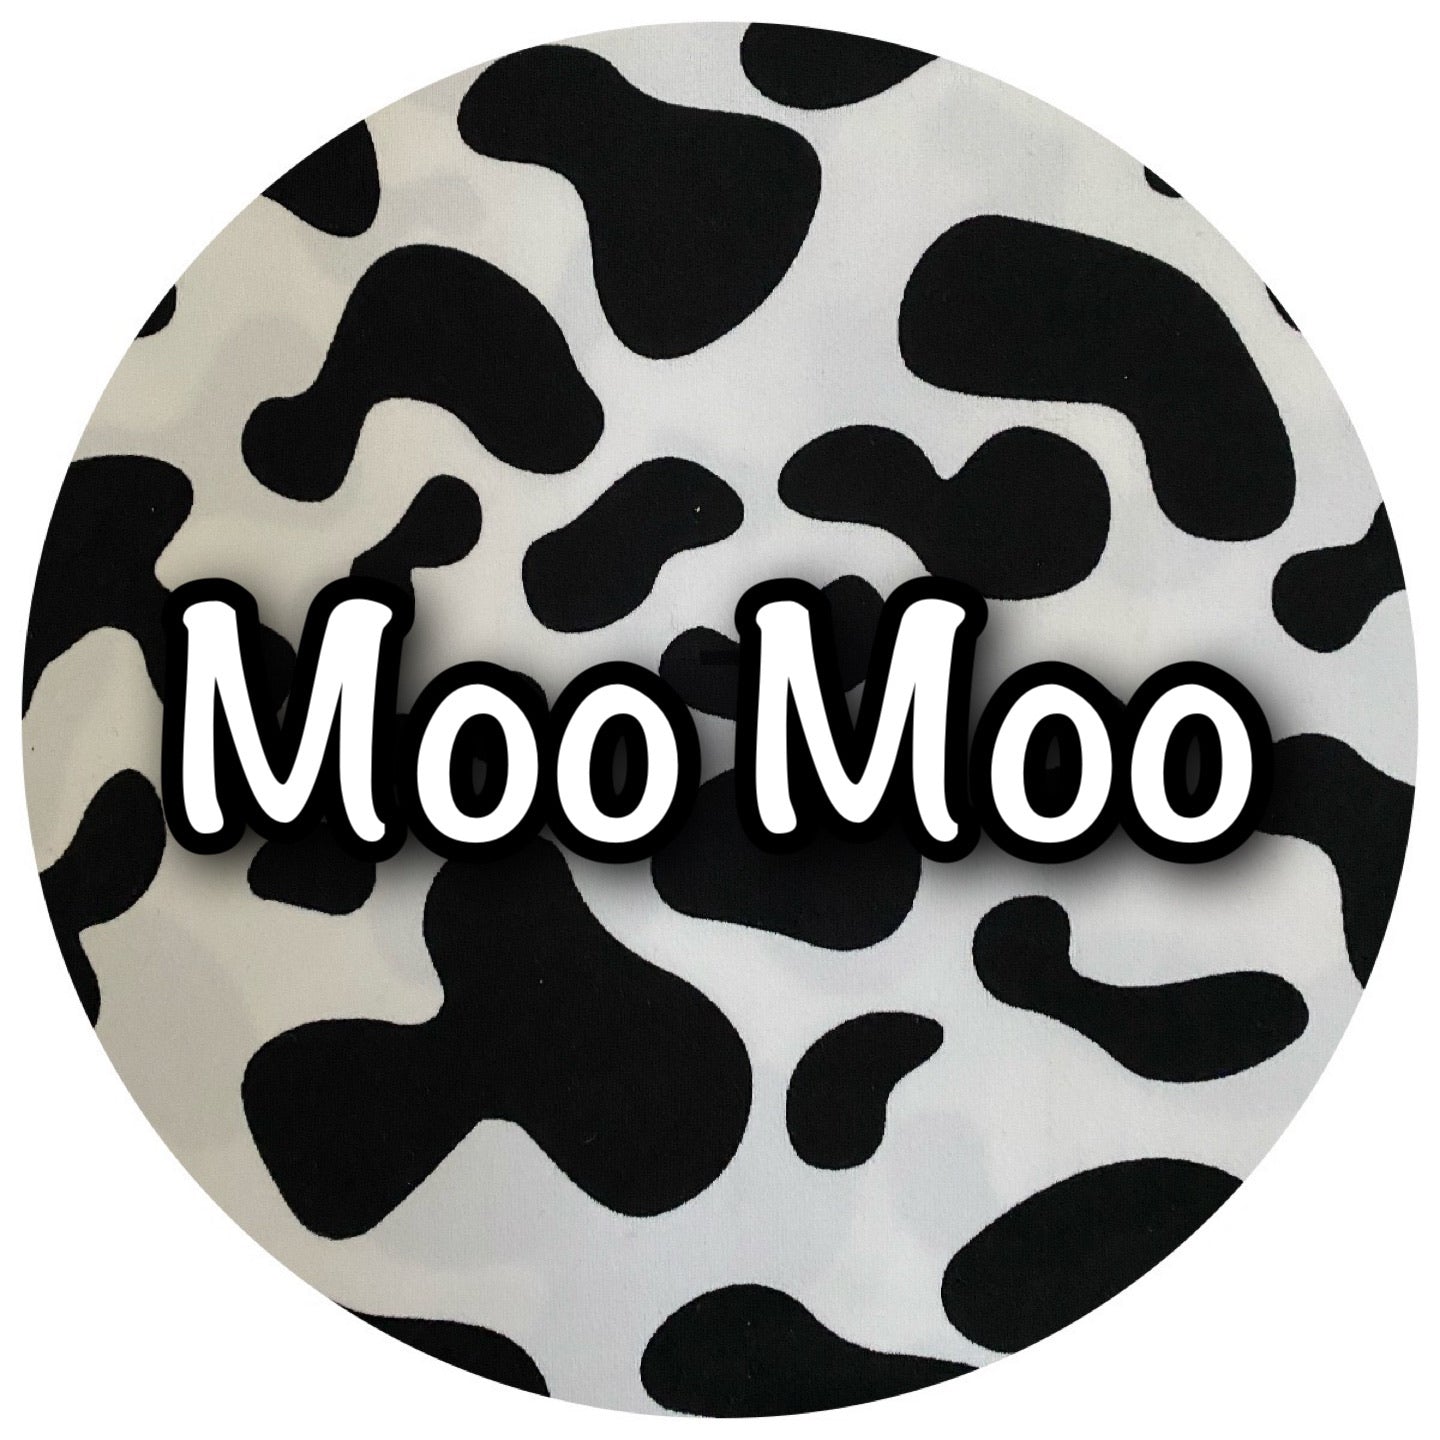 Moo Moo